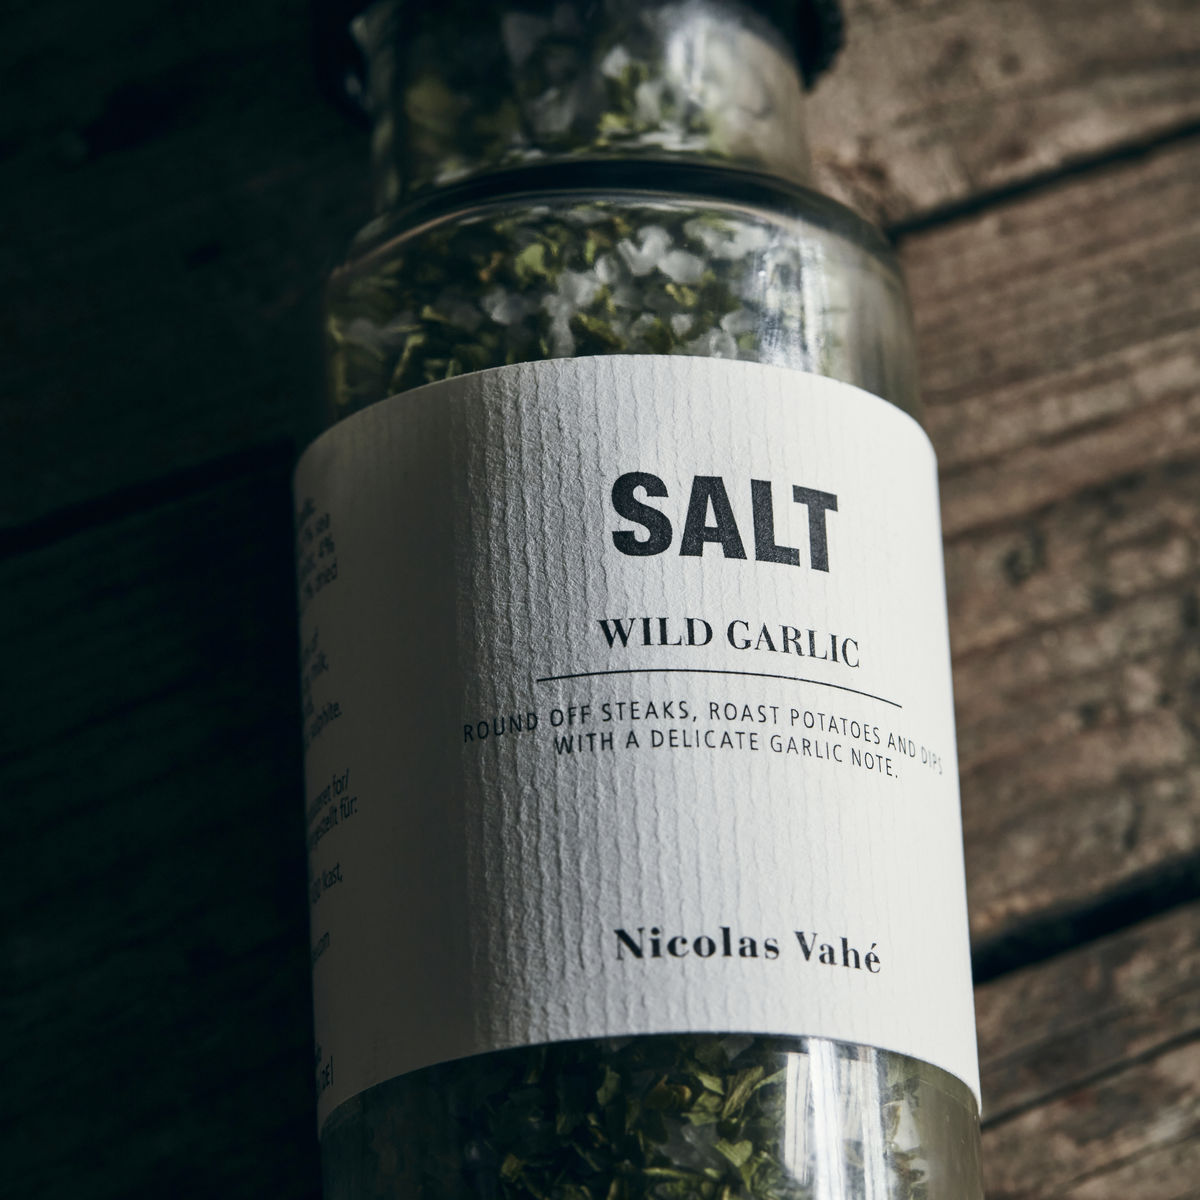 Salt with Wild Garlic